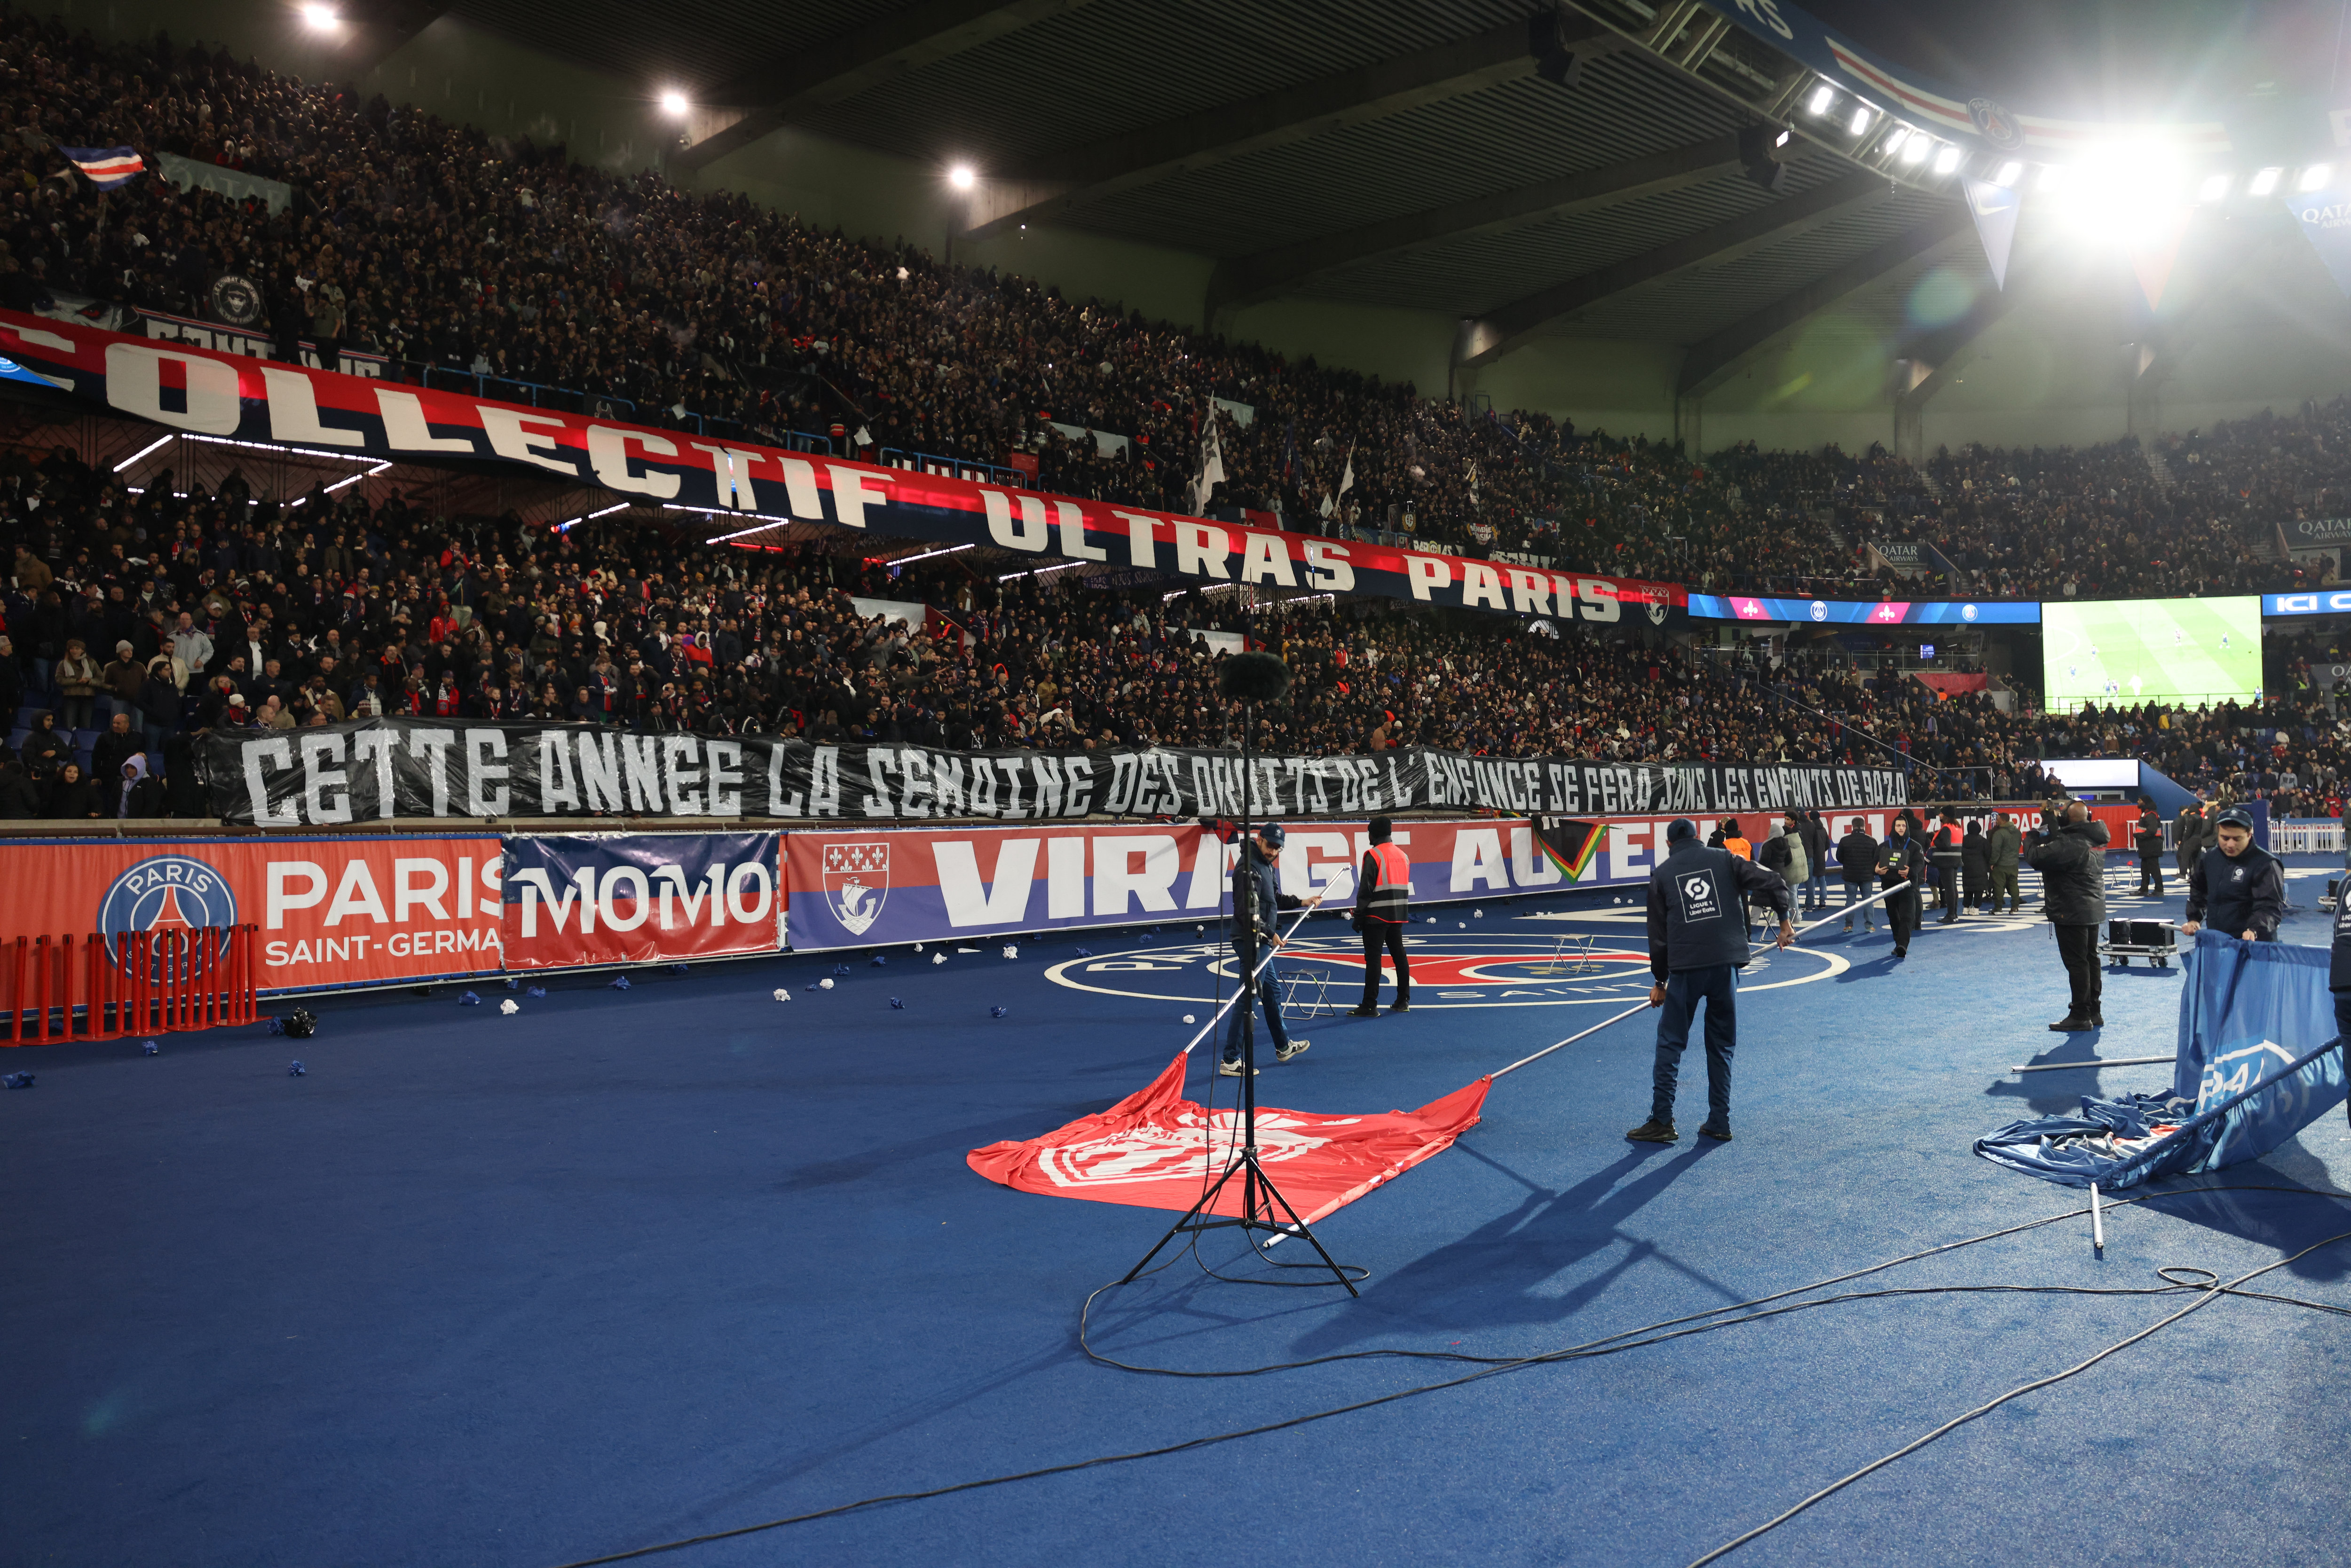 Avant PSG - Newcastle au Parc des Princes ce mardi soir, la tension est palpable entre les supporters des deux camps. LP/Arnaud Journois